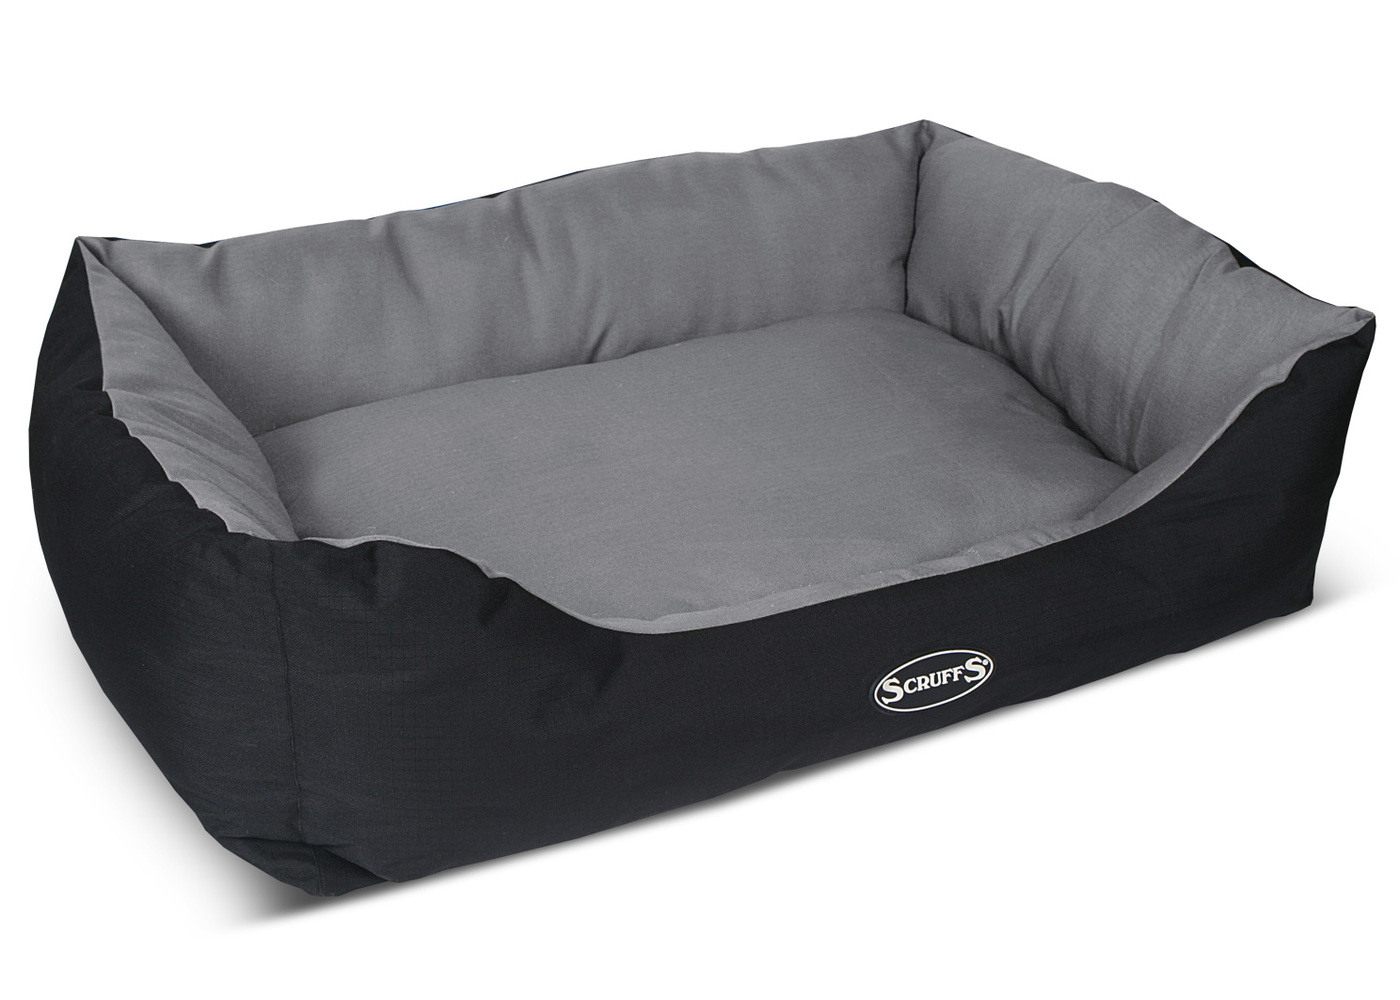 Лежанка для крупных пород. Лежак для собак Scruffs Highland Box Bed XL 90х70 см. Лежак для собак Scruffs Chester Box Bed s 50х40 см. Scruffs лежаки для собак. Лежак для собак Scruffs Wilton Box Bed l 75х60 см.